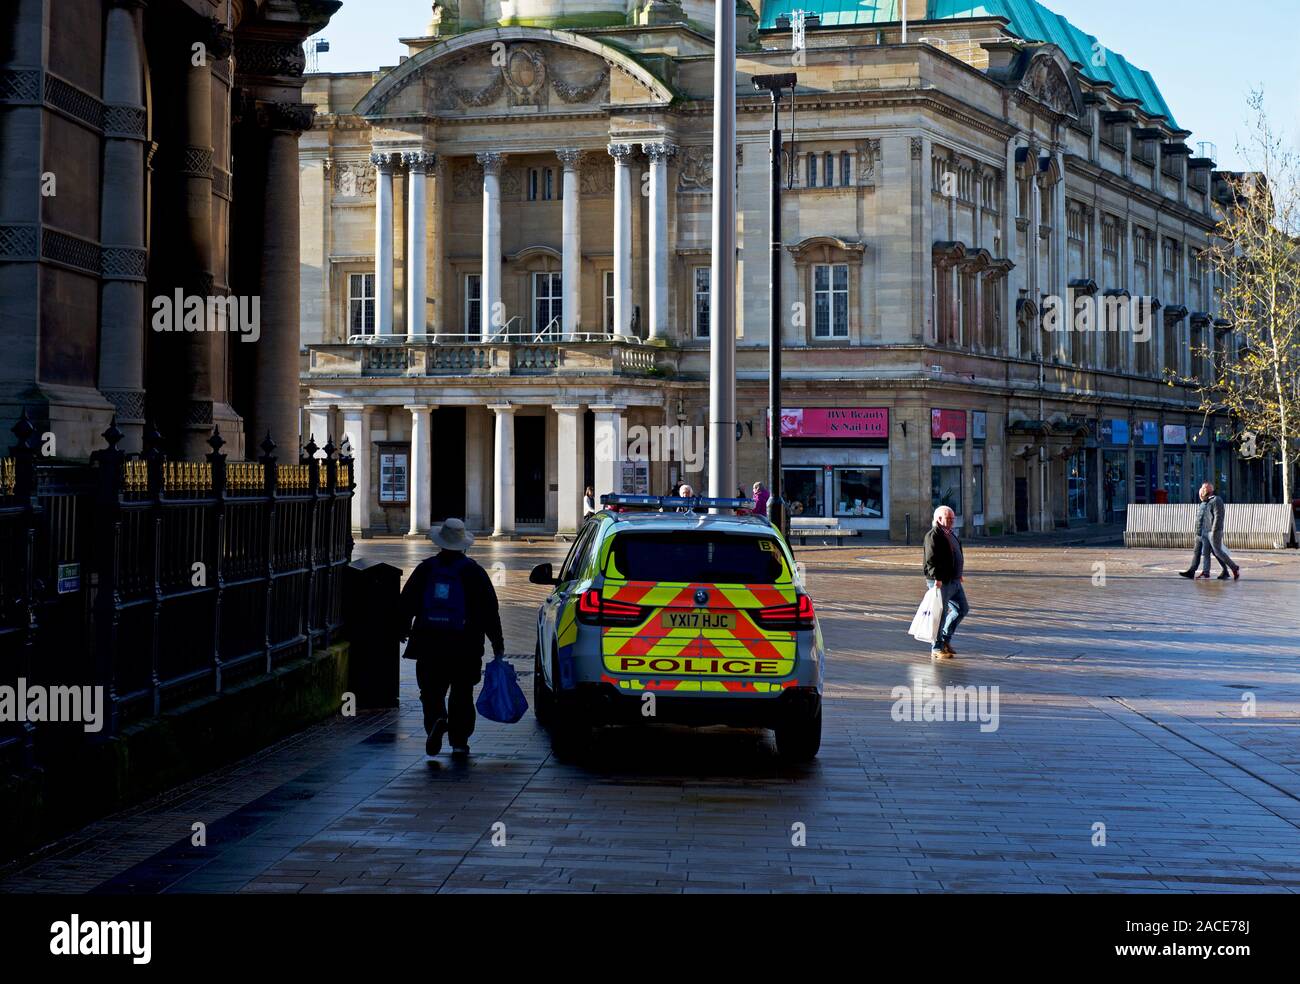 Polizei Auto die Innenstadt, Hull, East Yorkshire, England, Großbritannien Stockfoto